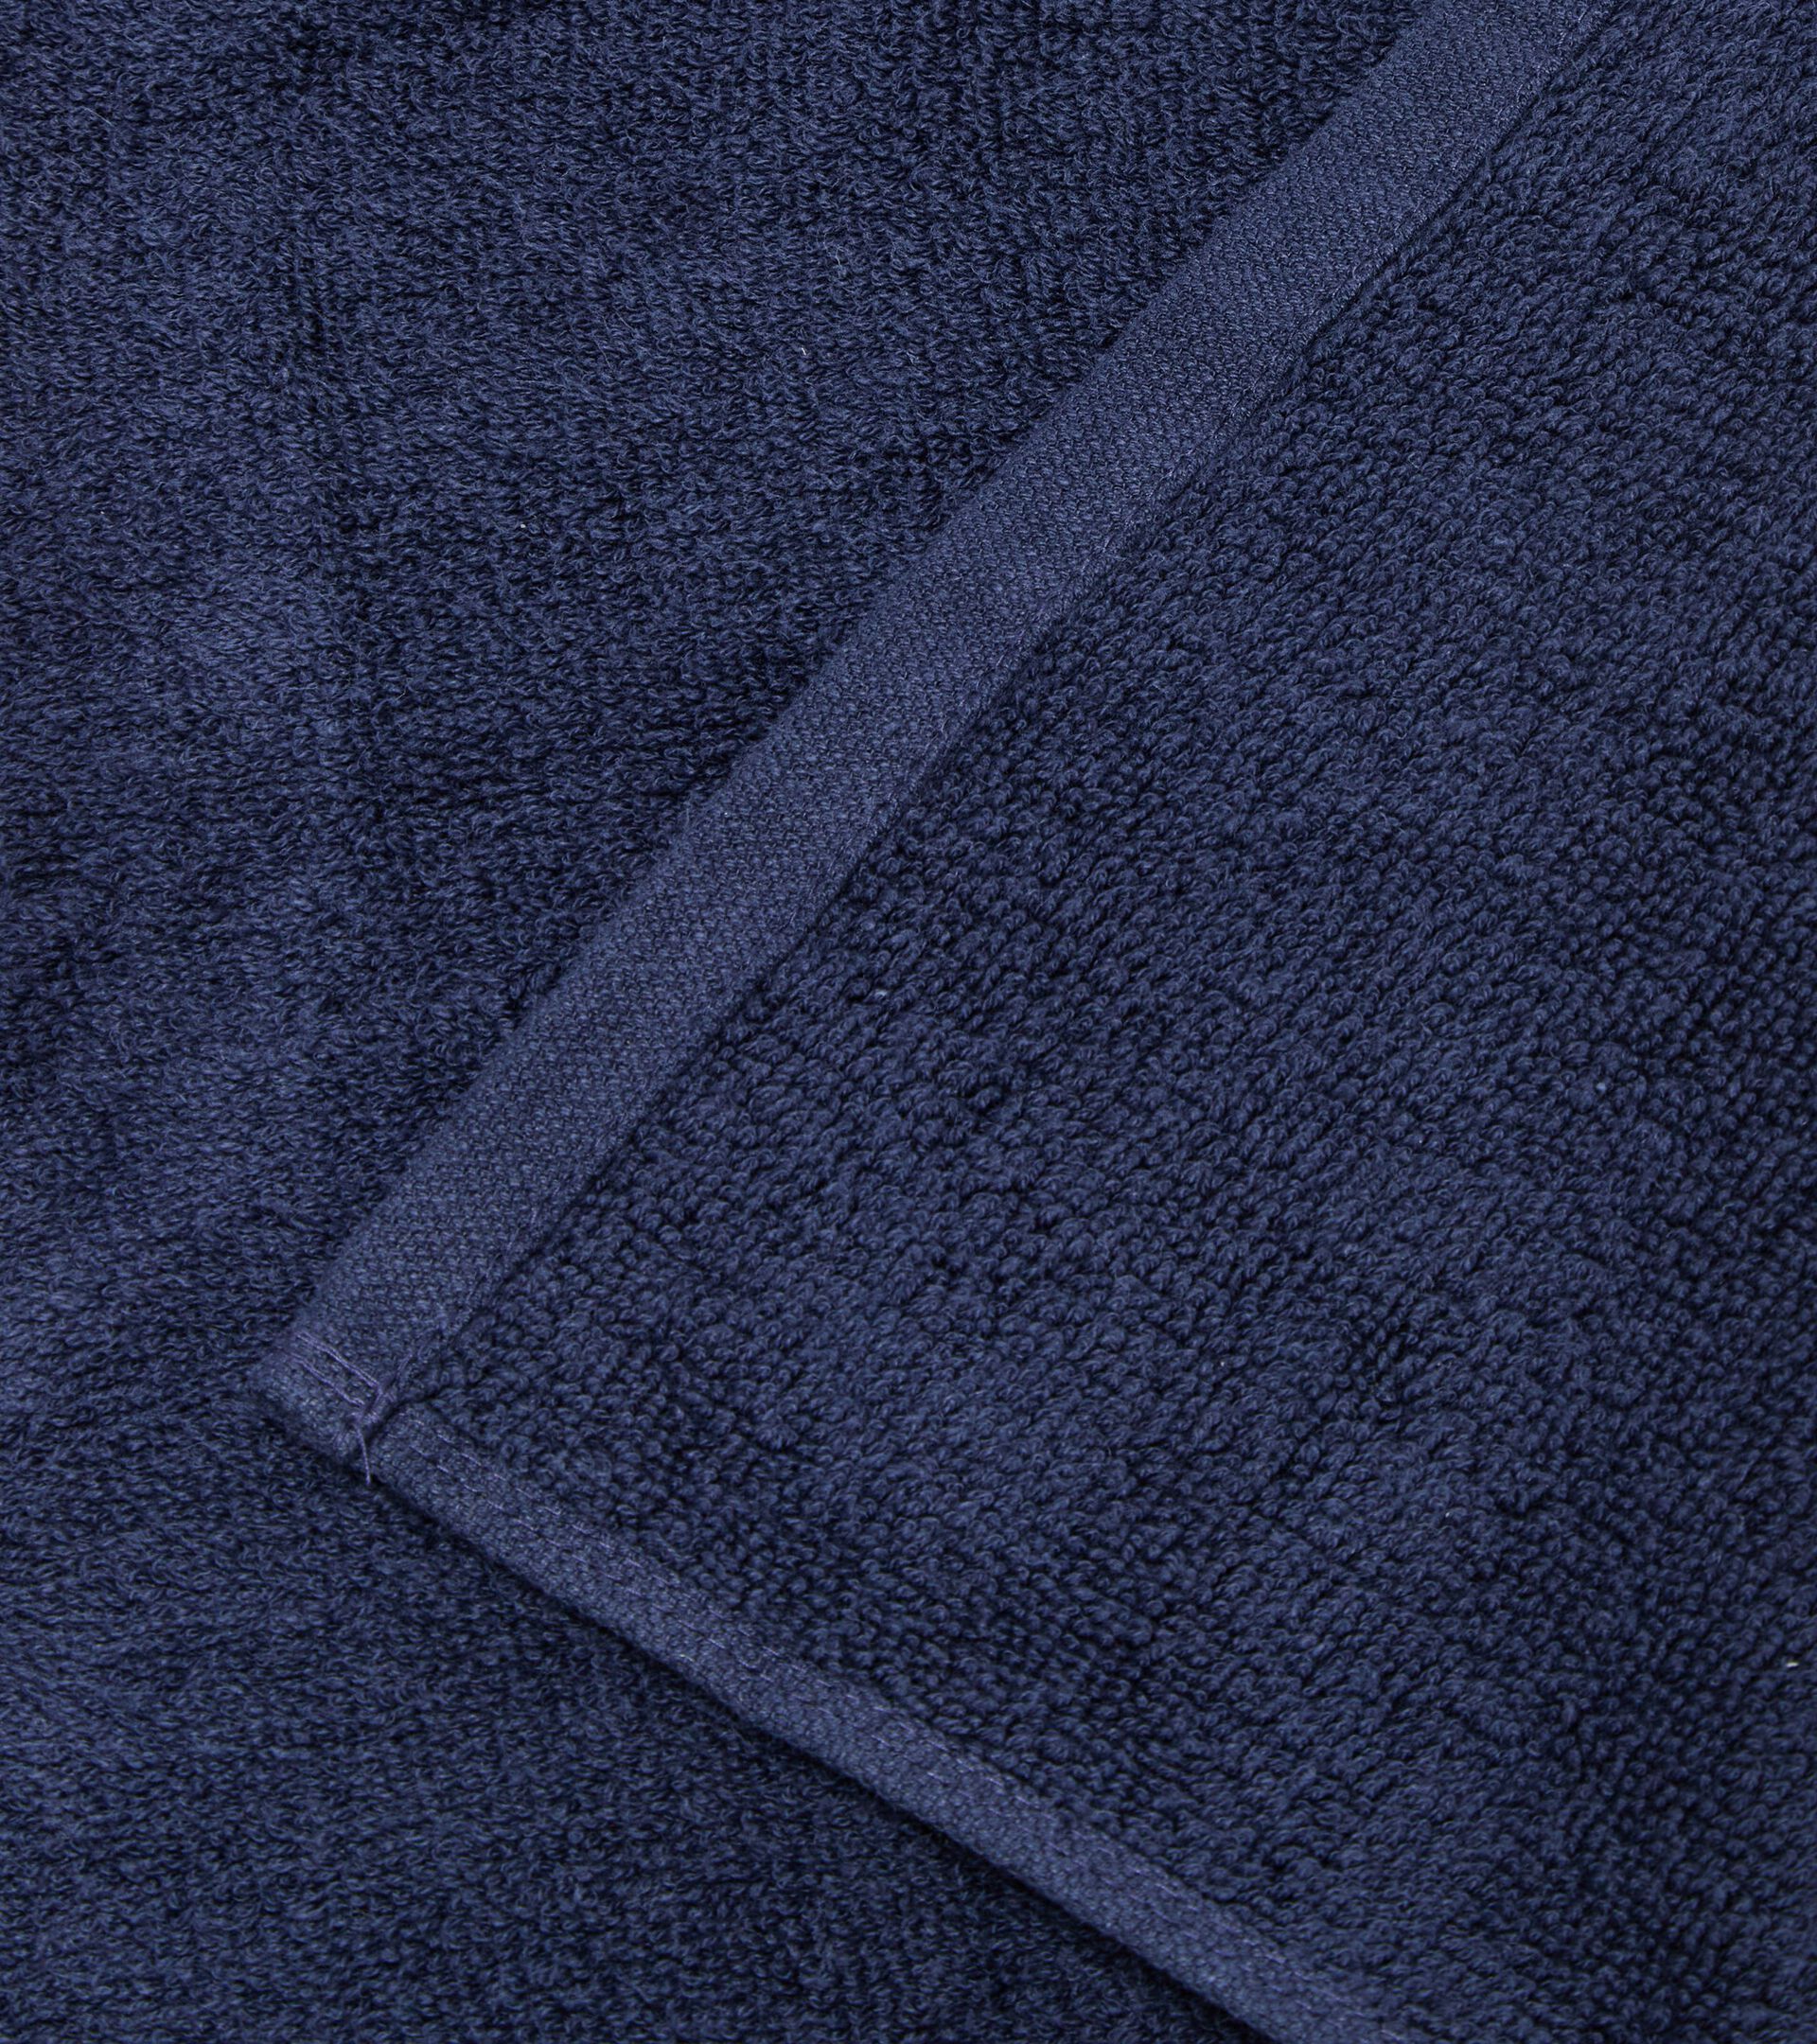 Cotton terry cloth towel TOWEL GYM CLASSIC NAVY - Diadora